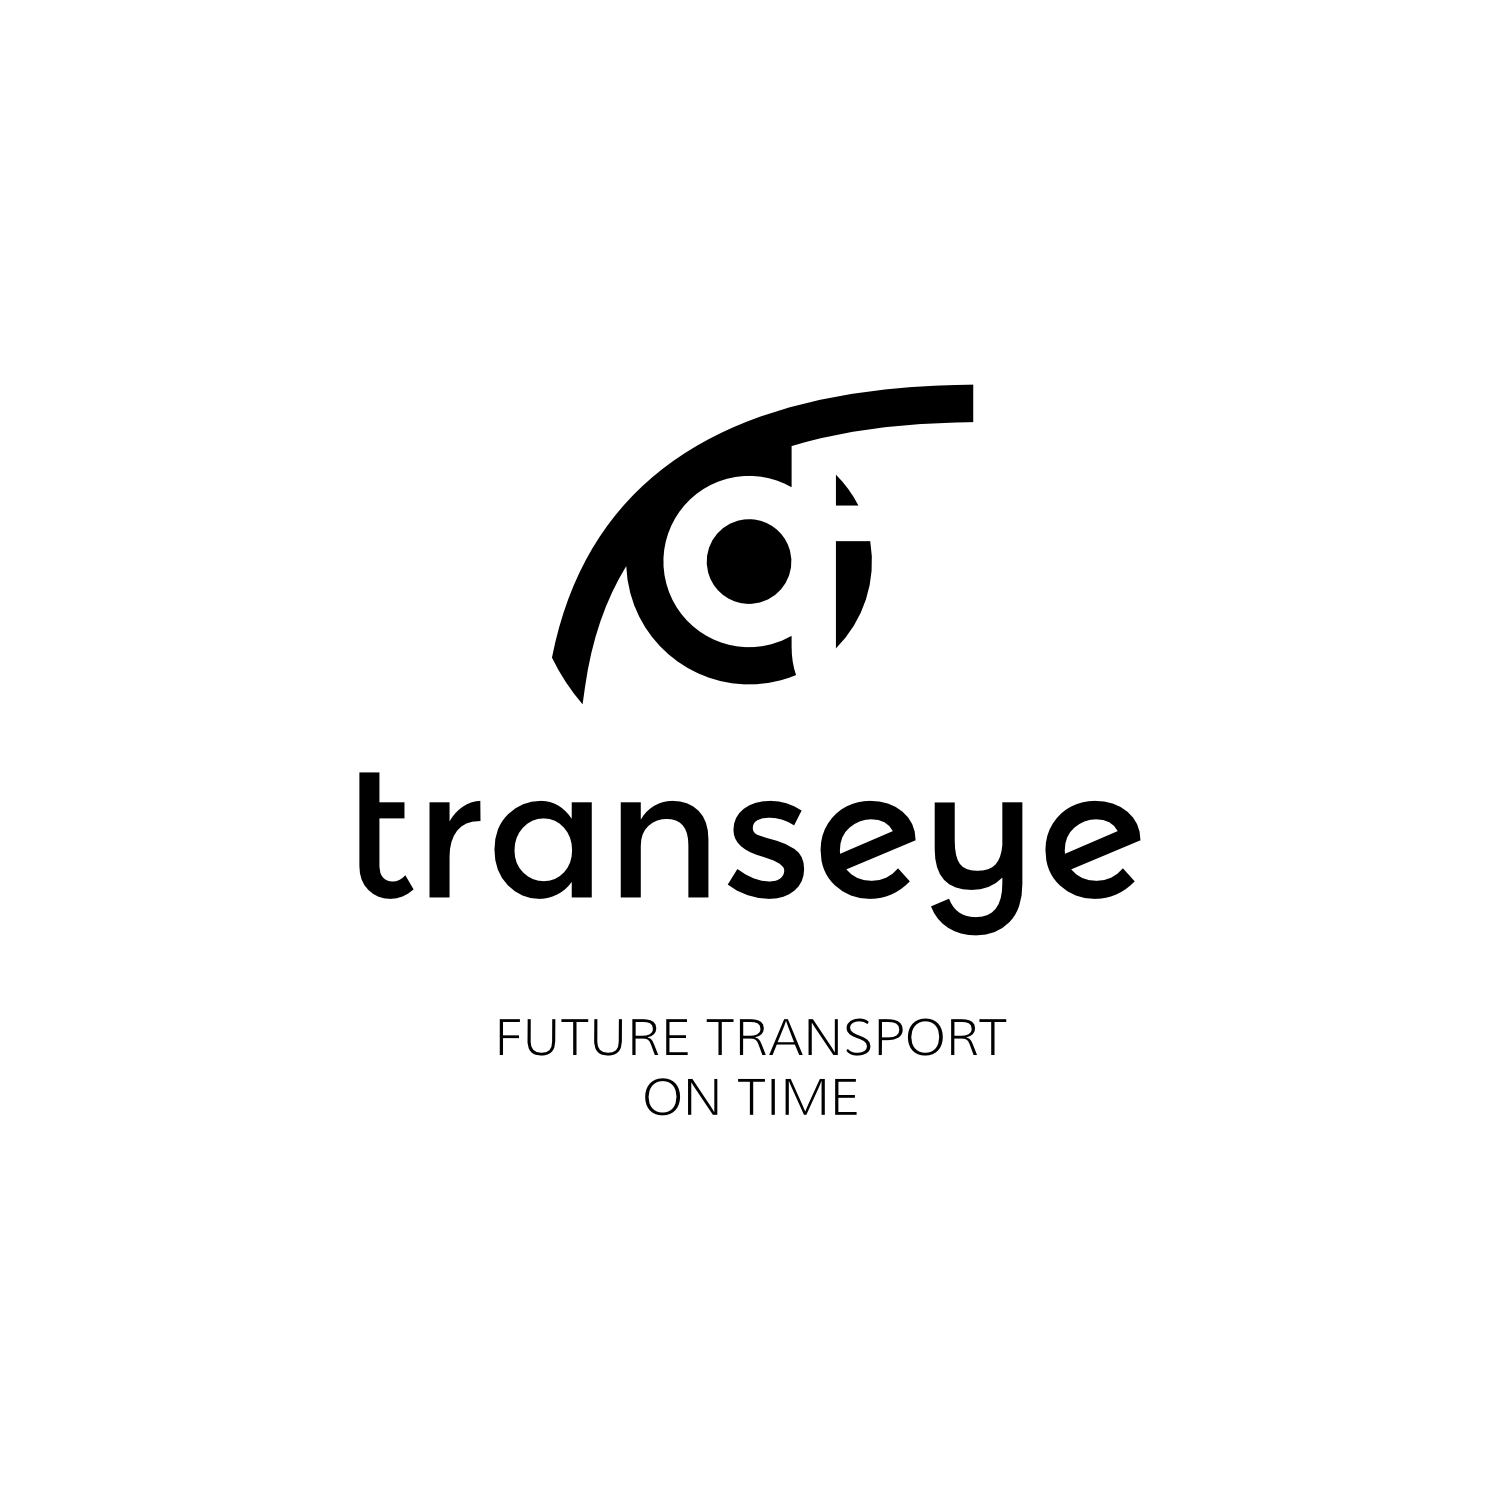 Logotipų kūrimas, logotipo dizainas verslui, responsive logo, Transeye logotipas su sloganu